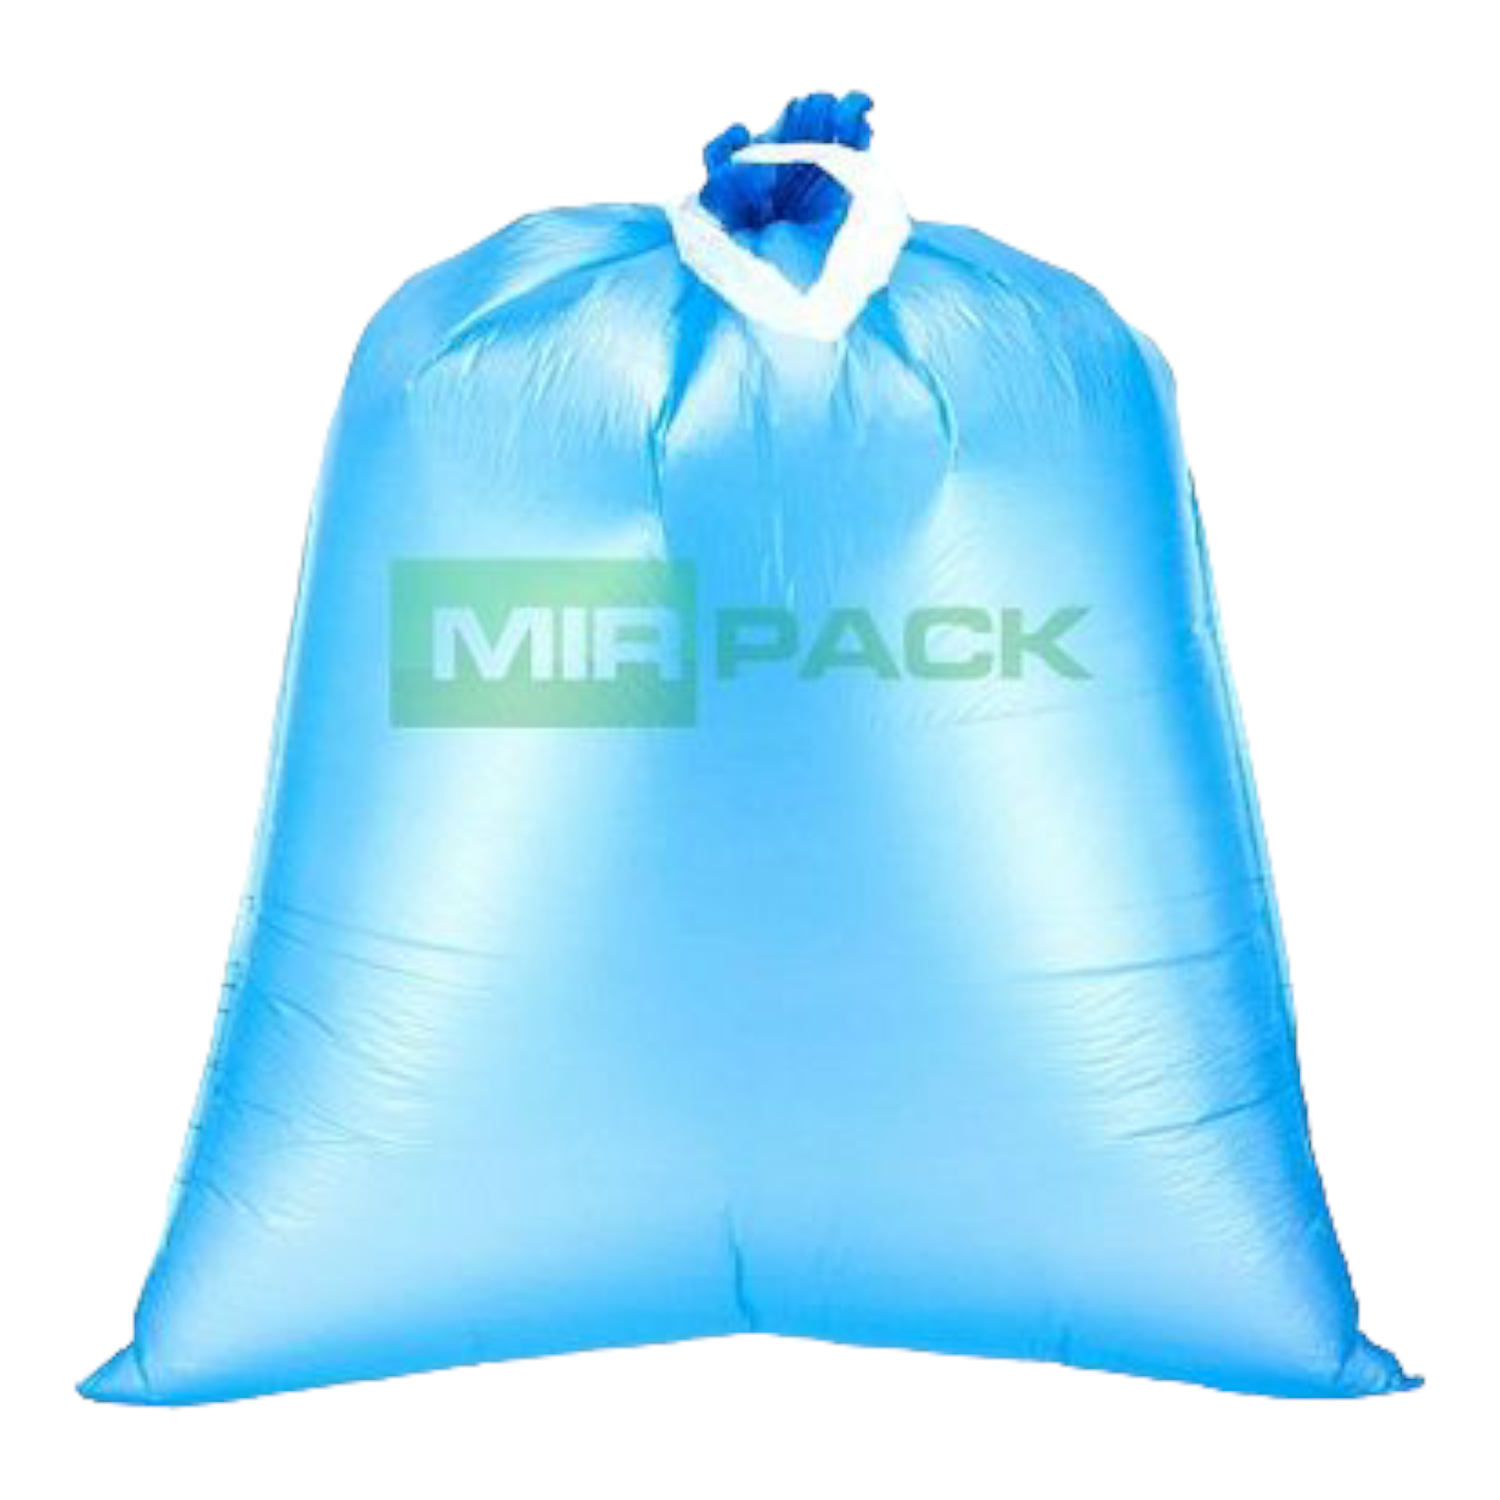 Мешки для мусора МешокRU с завязками 35 литров ПНД синие в рулоне прочные - фото 7